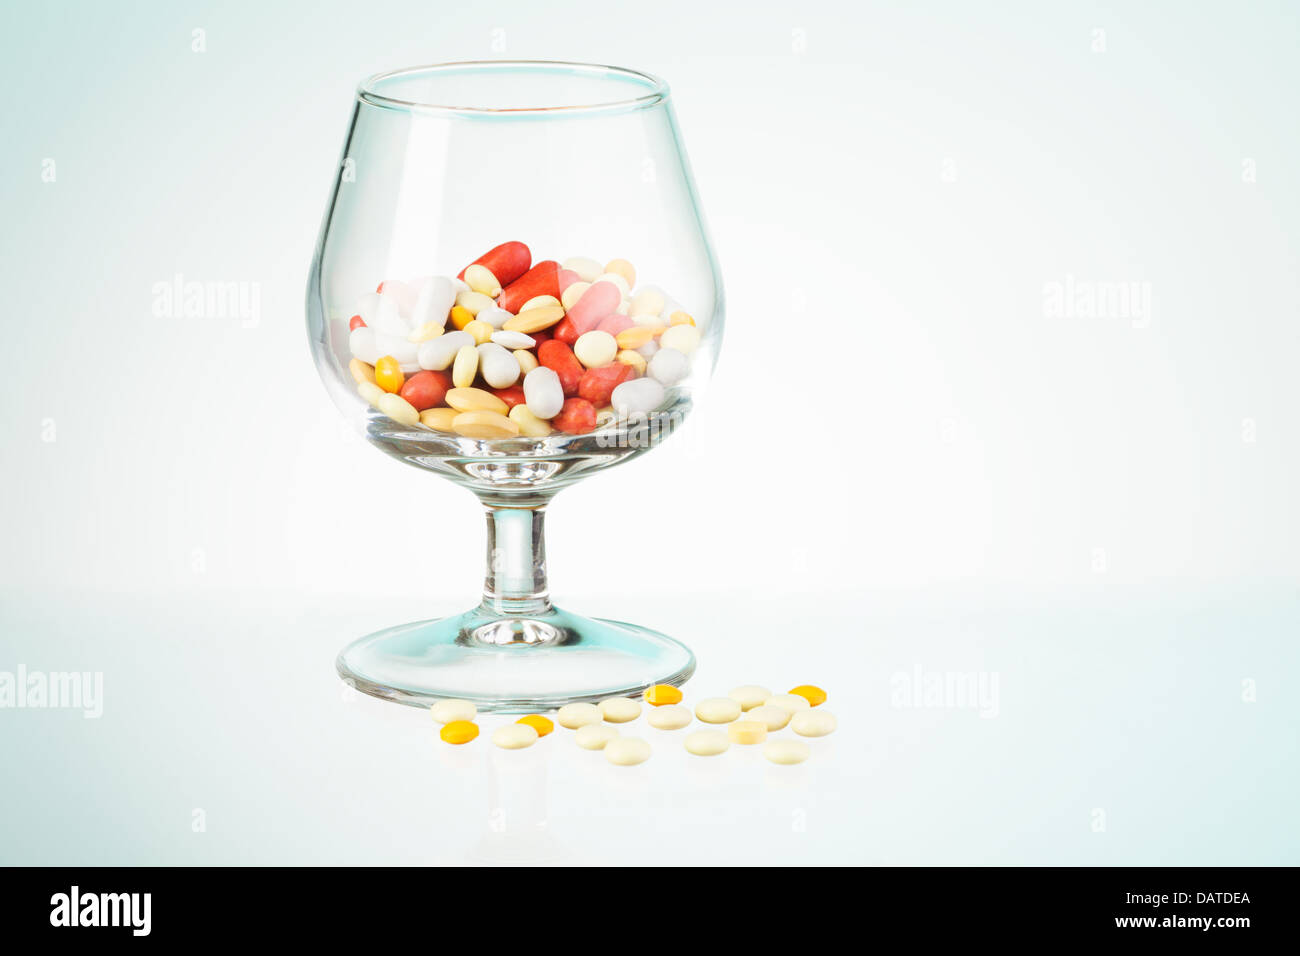 Problema potabile allegoria rappresentata da whisky classe piena di farmaci e pillole sparsi sul tavolo Foto Stock